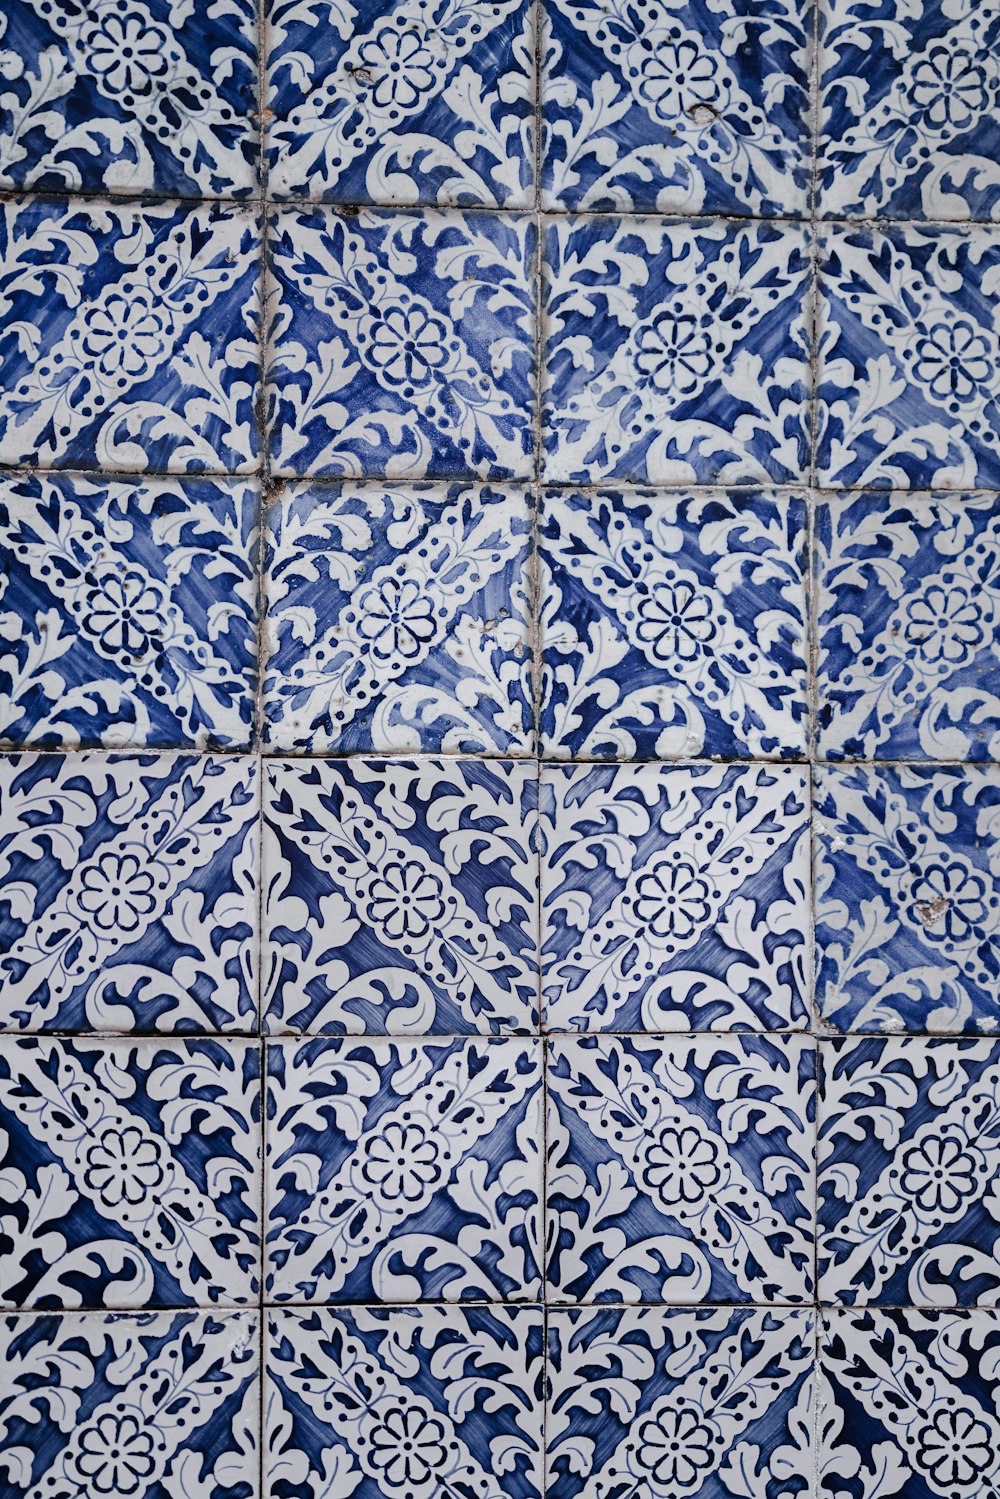 azulejos florais brancos e azuis